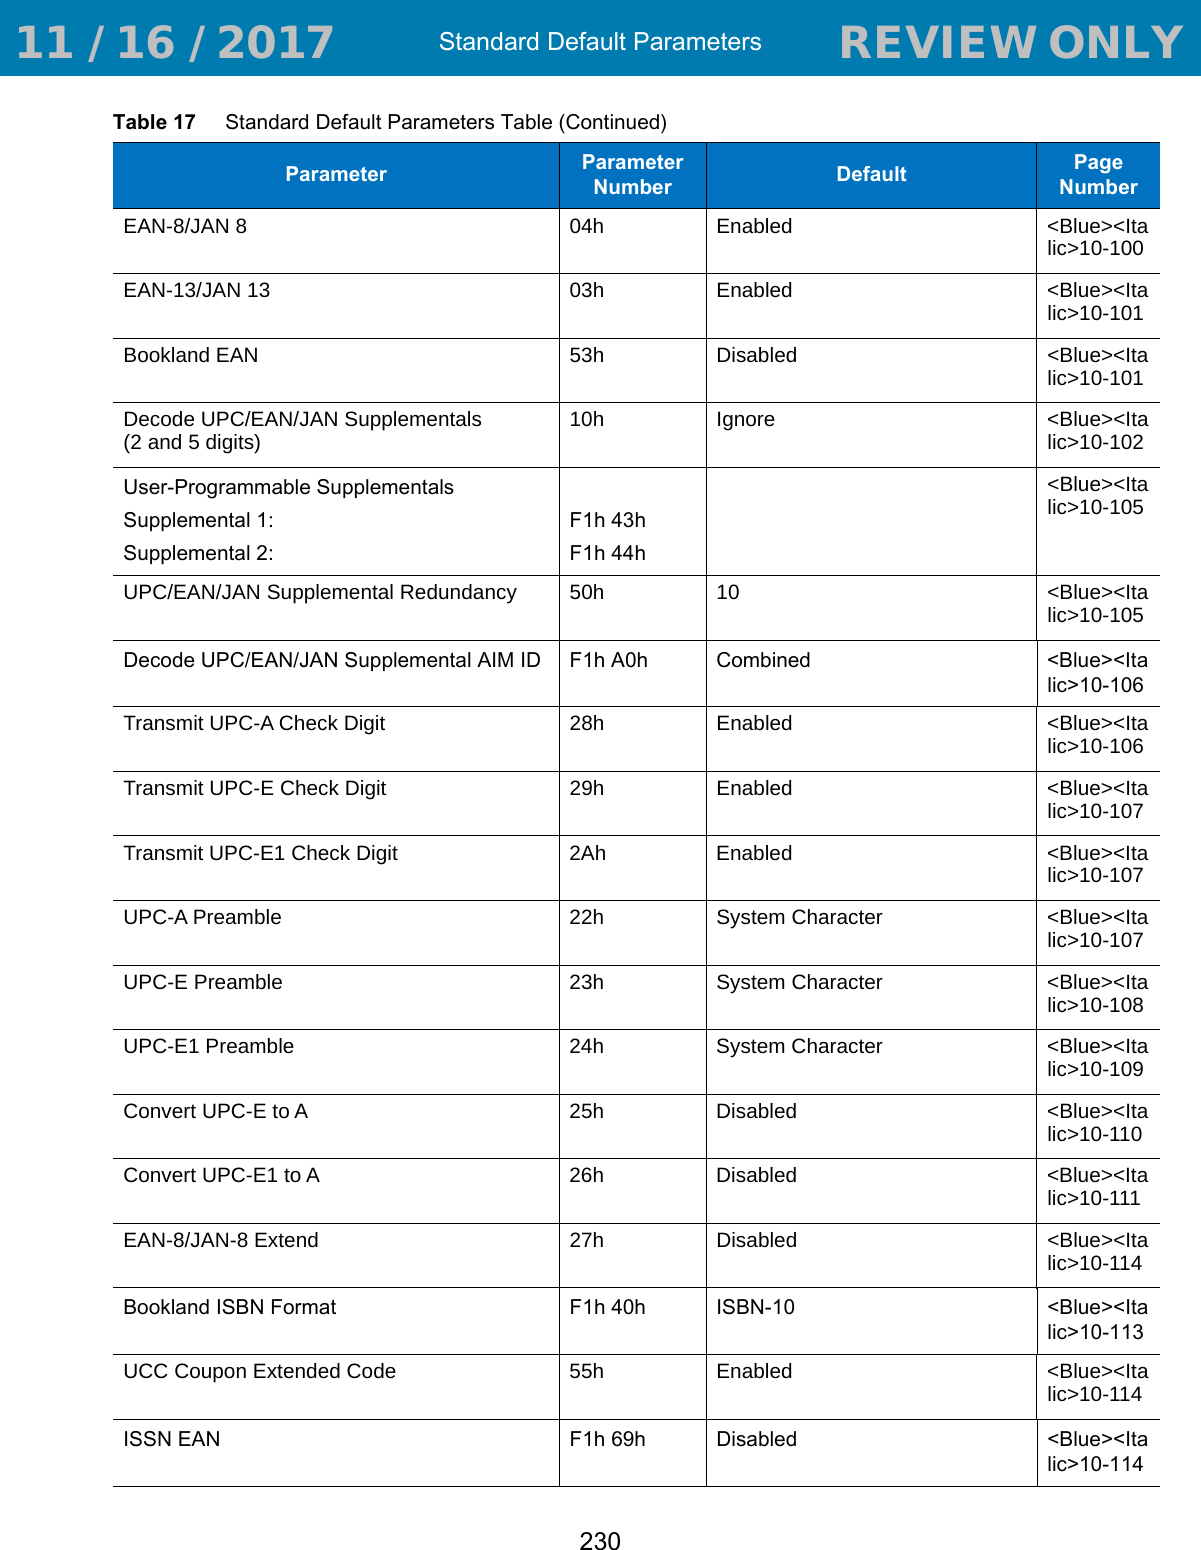 Standard Default Parameters230EAN-8/JAN 8 04h Enabled &lt;Blue&gt;&lt;Italic&gt;10-100EAN-13/JAN 13 03h Enabled &lt;Blue&gt;&lt;Italic&gt;10-101Bookland EAN 53h Disabled &lt;Blue&gt;&lt;Italic&gt;10-101Decode UPC/EAN/JAN Supplementals (2 and 5 digits) 10h Ignore &lt;Blue&gt;&lt;Italic&gt;10-102User-Programmable SupplementalsSupplemental 1: Supplemental 2: F1h 43hF1h 44h&lt;Blue&gt;&lt;Italic&gt;10-105UPC/EAN/JAN Supplemental Redundancy 50h 10 &lt;Blue&gt;&lt;Italic&gt;10-105Decode UPC/EAN/JAN Supplemental AIM ID F1h A0h Combined &lt;Blue&gt;&lt;Italic&gt;10-106Transmit UPC-A Check Digit 28h Enabled &lt;Blue&gt;&lt;Italic&gt;10-106Transmit UPC-E Check Digit  29h Enabled &lt;Blue&gt;&lt;Italic&gt;10-107Transmit UPC-E1 Check Digit 2Ah Enabled &lt;Blue&gt;&lt;Italic&gt;10-107UPC-A Preamble 22h System Character &lt;Blue&gt;&lt;Italic&gt;10-107UPC-E Preamble 23h System Character &lt;Blue&gt;&lt;Italic&gt;10-108UPC-E1 Preamble 24h System Character &lt;Blue&gt;&lt;Italic&gt;10-109Convert UPC-E to A 25h Disabled &lt;Blue&gt;&lt;Italic&gt;10-110Convert UPC-E1 to A 26h Disabled &lt;Blue&gt;&lt;Italic&gt;10-111EAN-8/JAN-8 Extend 27h Disabled &lt;Blue&gt;&lt;Italic&gt;10-114Bookland ISBN Format F1h 40h ISBN-10 &lt;Blue&gt;&lt;Italic&gt;10-113UCC Coupon Extended Code 55h Enabled &lt;Blue&gt;&lt;Italic&gt;10-114ISSN EAN F1h 69h Disabled &lt;Blue&gt;&lt;Italic&gt;10-114Table 17     Standard Default Parameters Table (Continued)Parameter Parameter Number Default Page Number 11 / 16 / 2017                                  REVIEW ONLY                             REVIEW ONLY - REVIEW ONLY - REVIEW ONLY